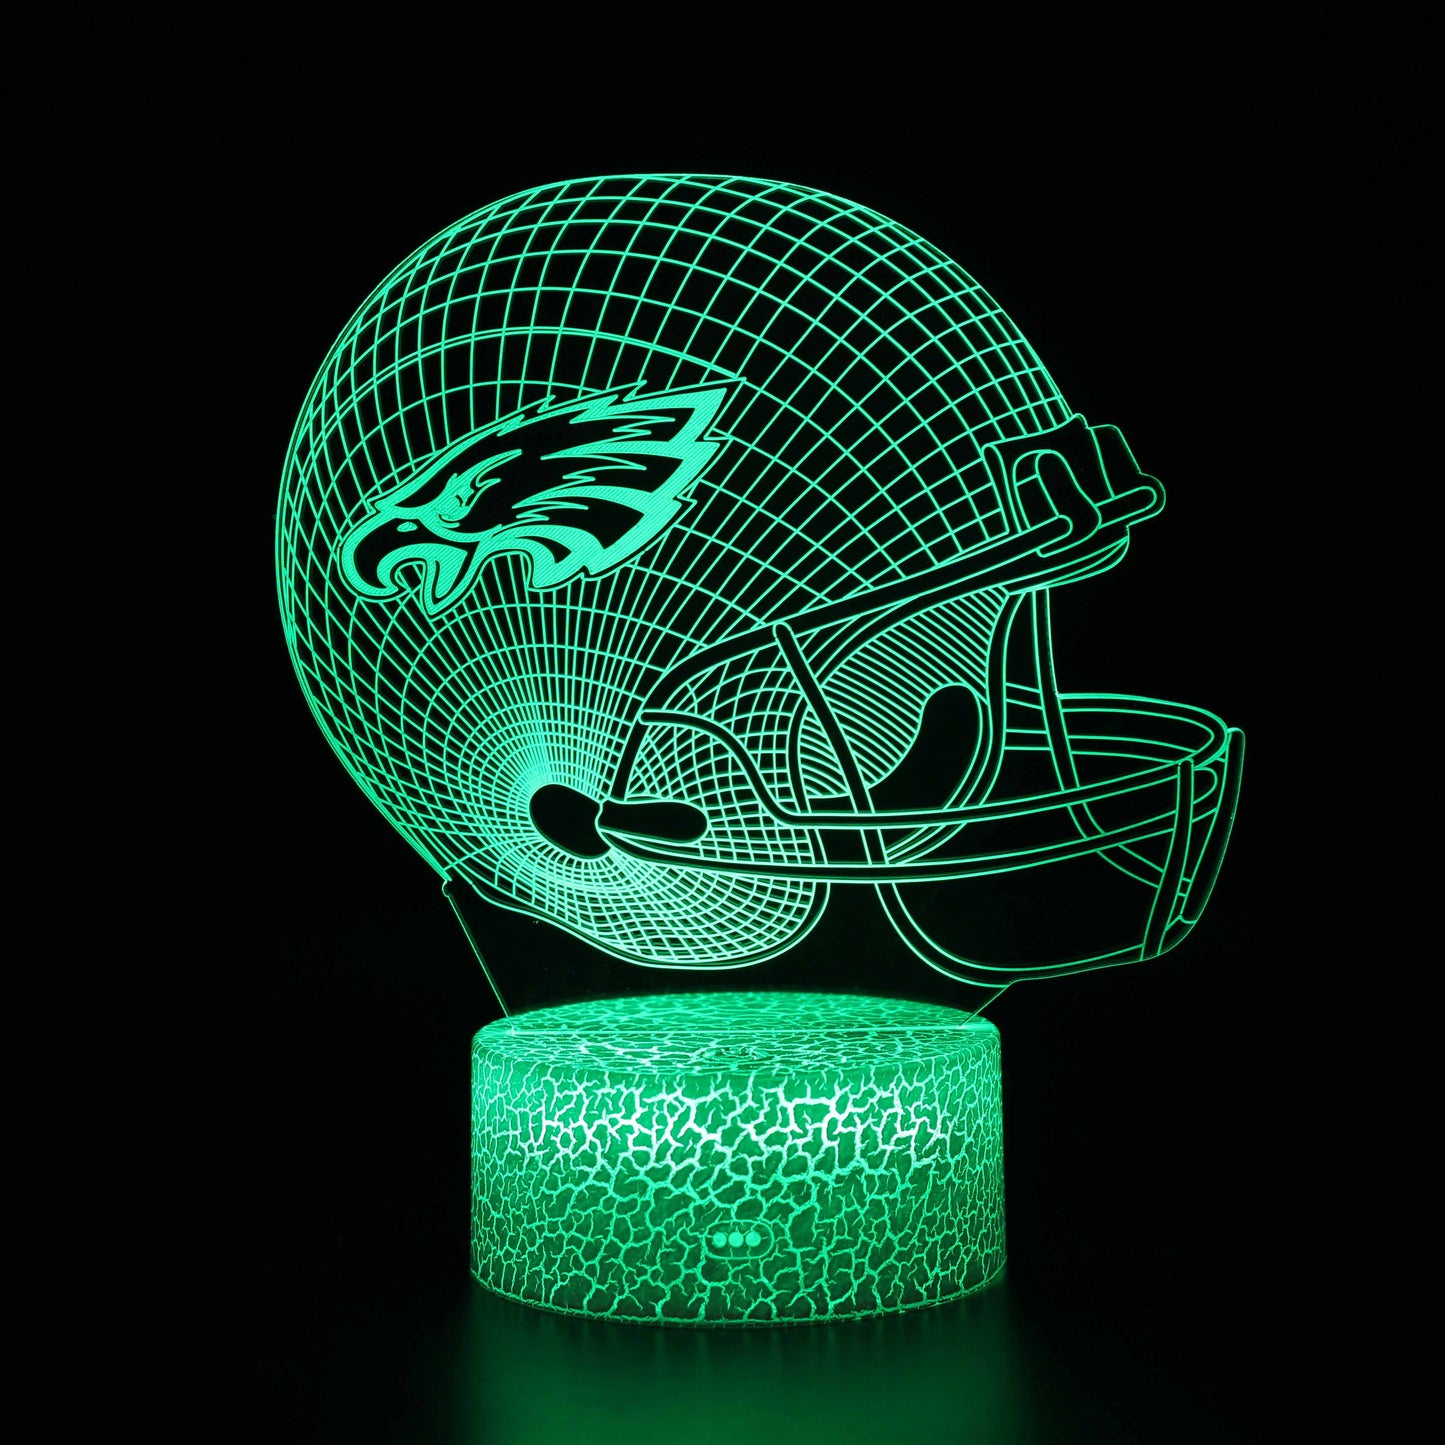 Philadelphia Eagles NFL Football Helmet 3D Night Light